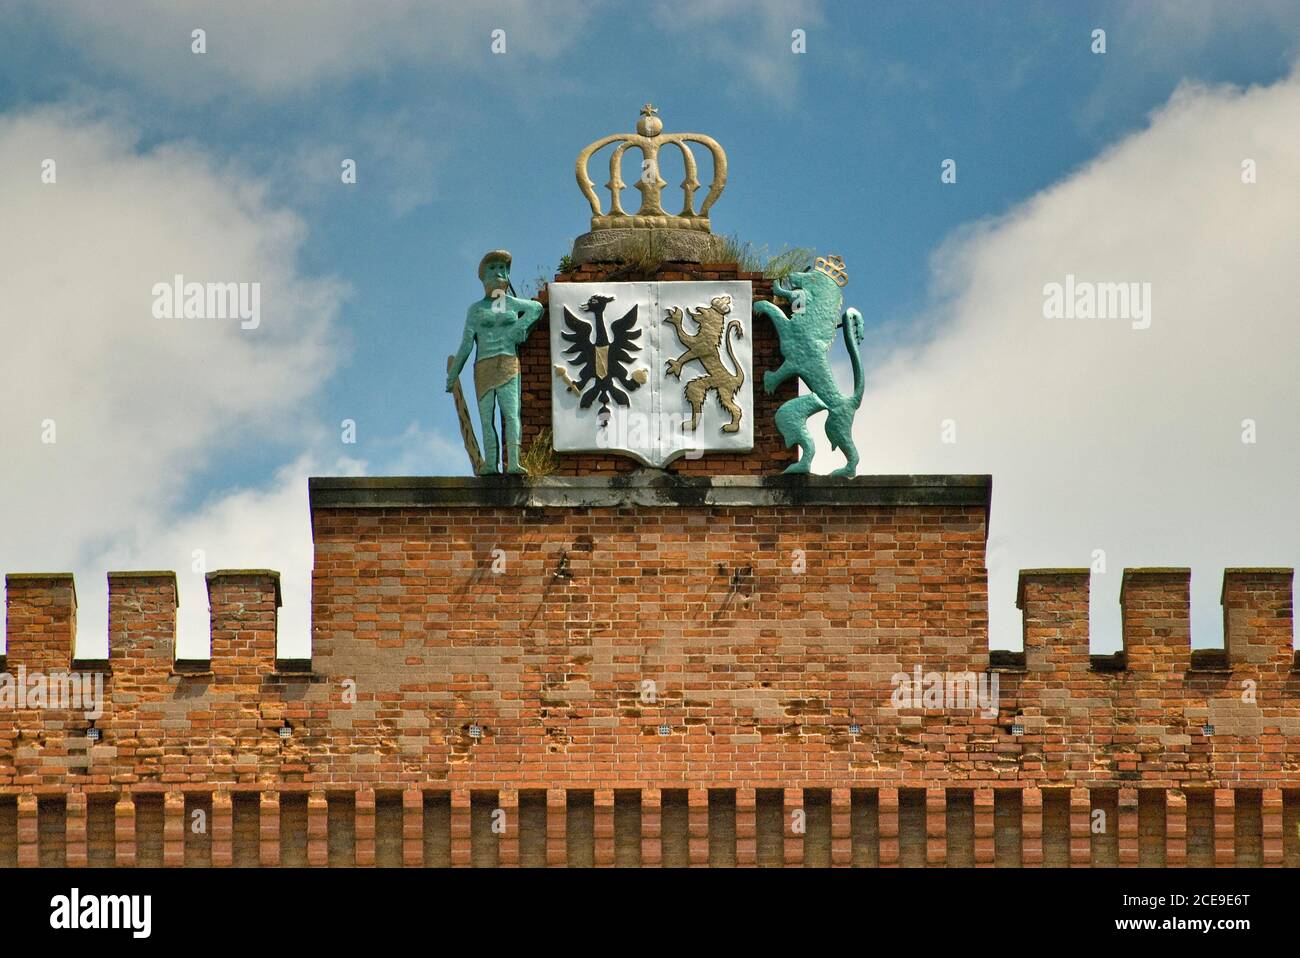 Cartouche con stemma al muro merlato al Castello di Kamieniec Ząbkowicki nella bassa Slesia, Polonia Foto Stock